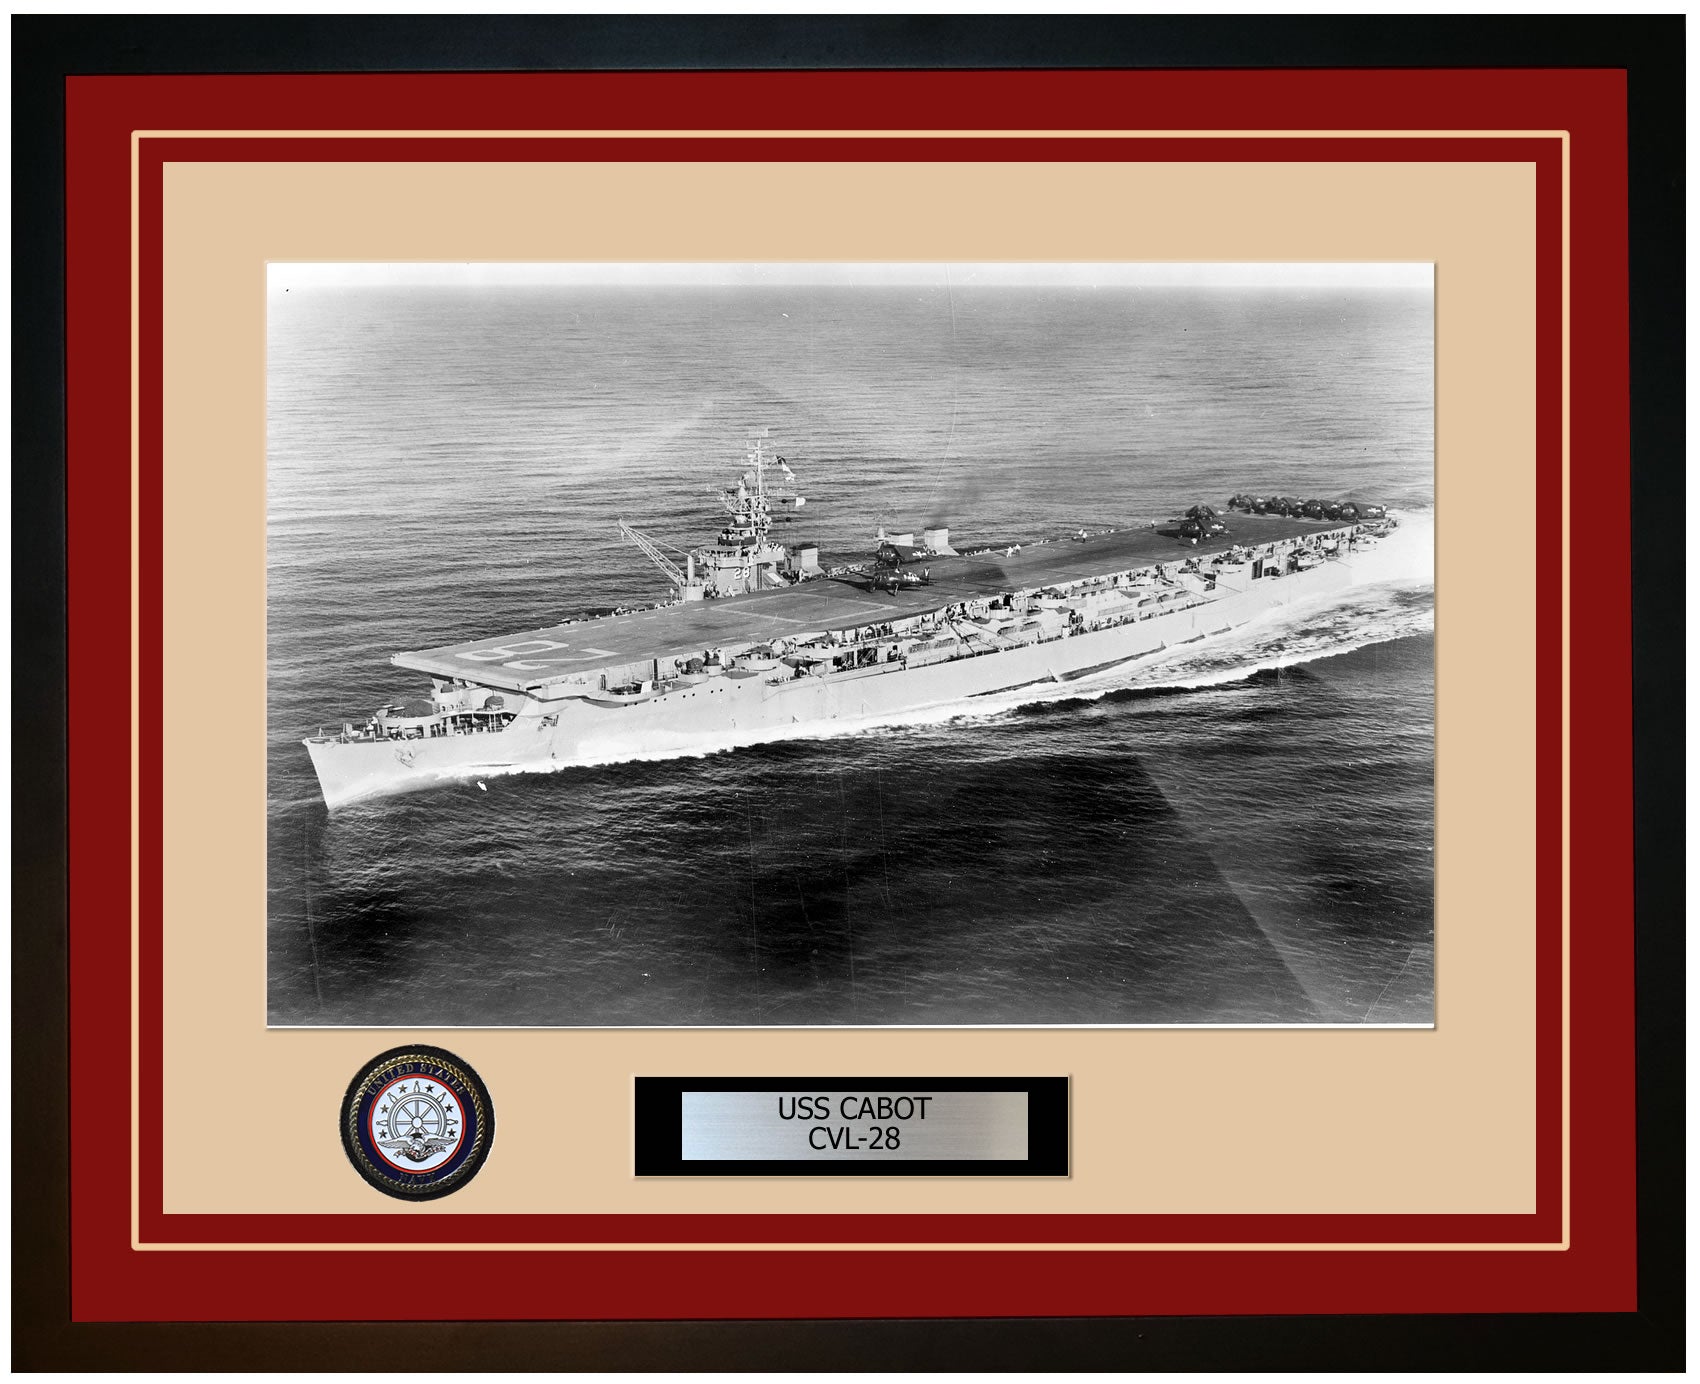 USS CABOT CVL-28 Framed Navy Ship Photo Burgundy